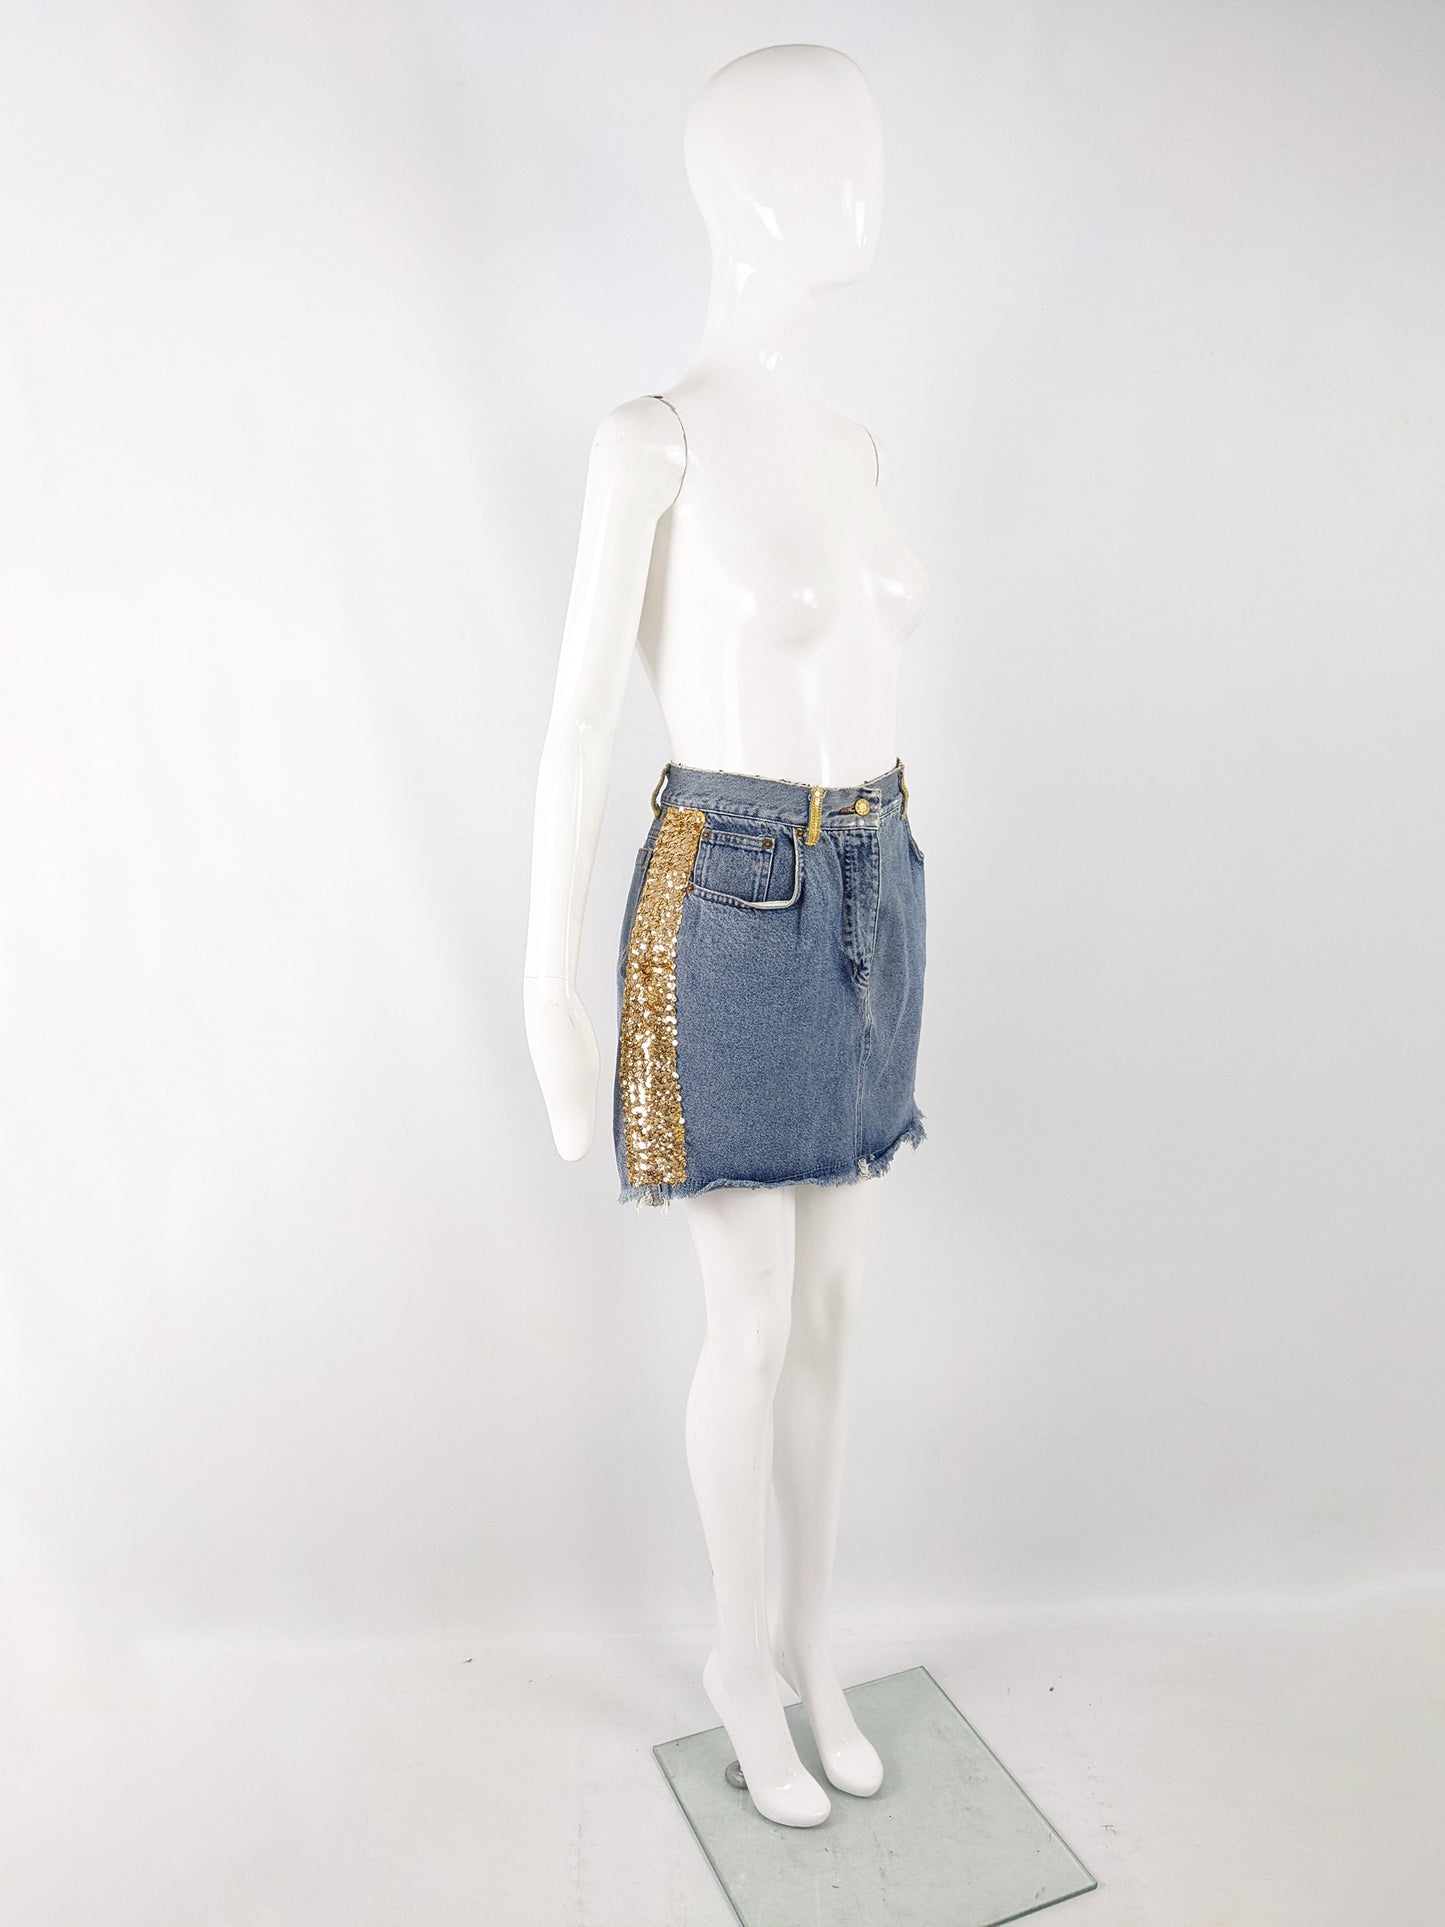 Katharine Hamnett Vintage Blue Denim & Gold Sequin Skirt, 1980s